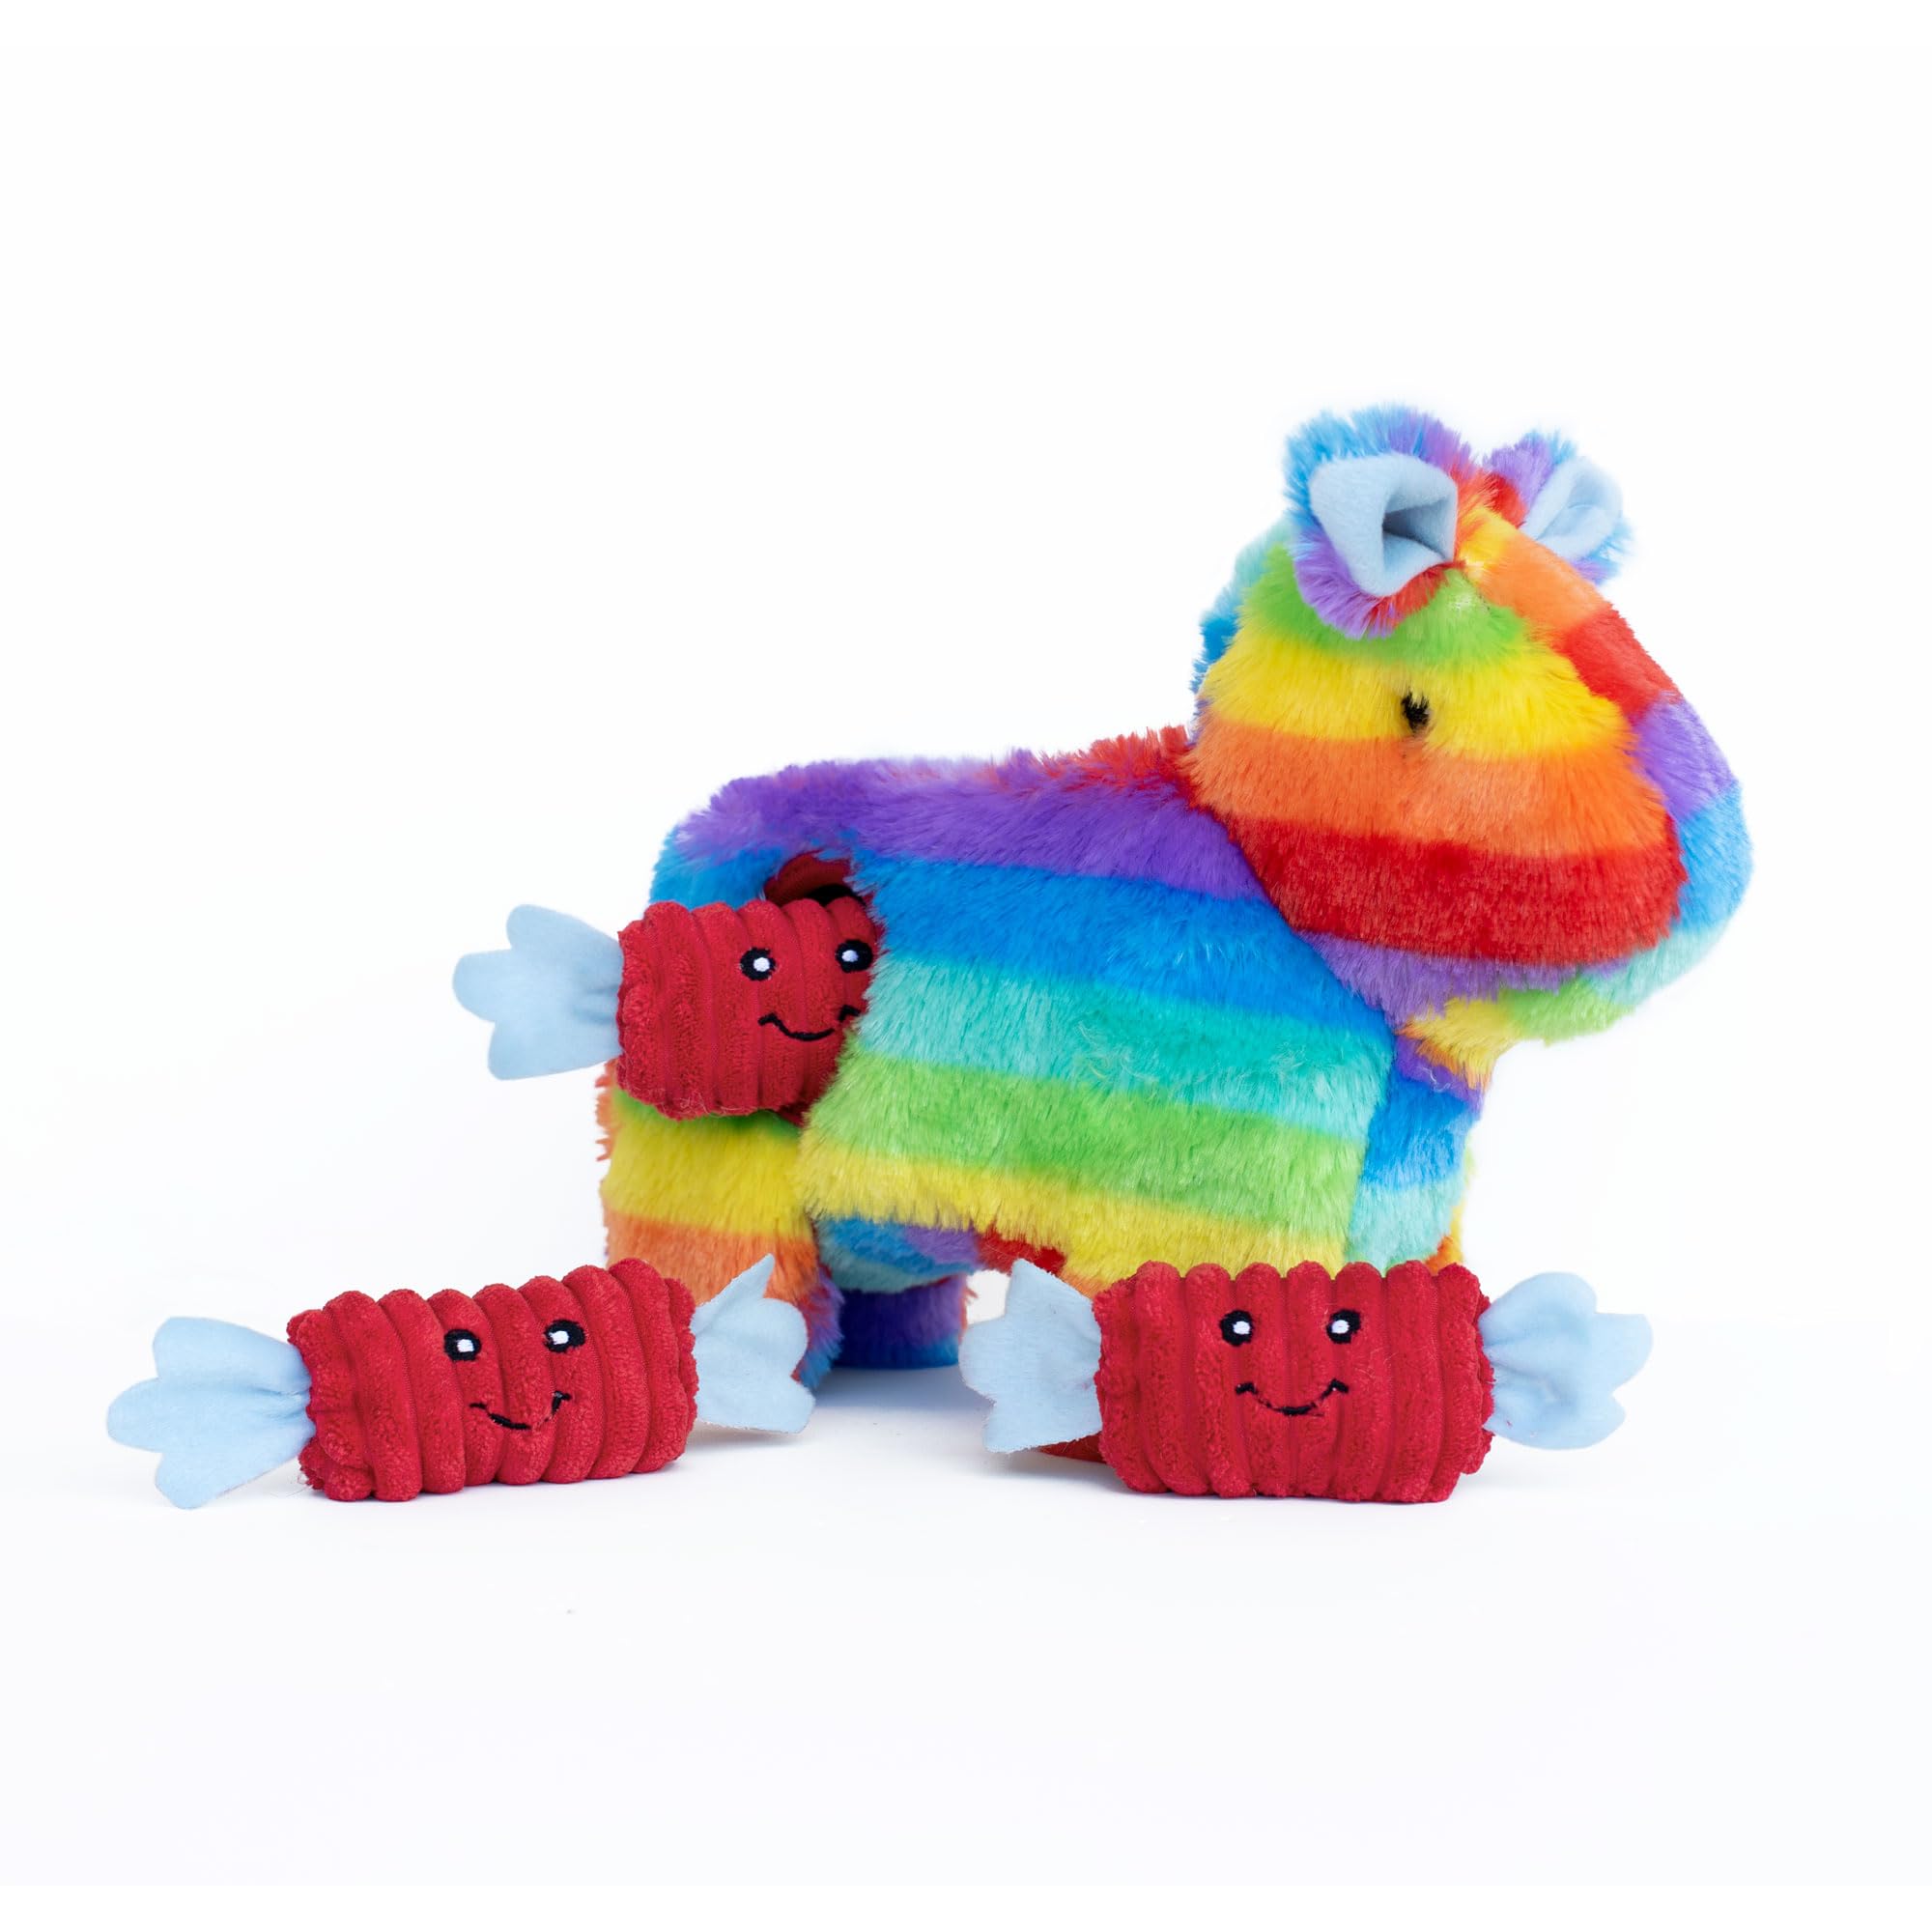 Zippy Paws Zp905 - Zippy Burrow - Piñata Spielzeug für Hund